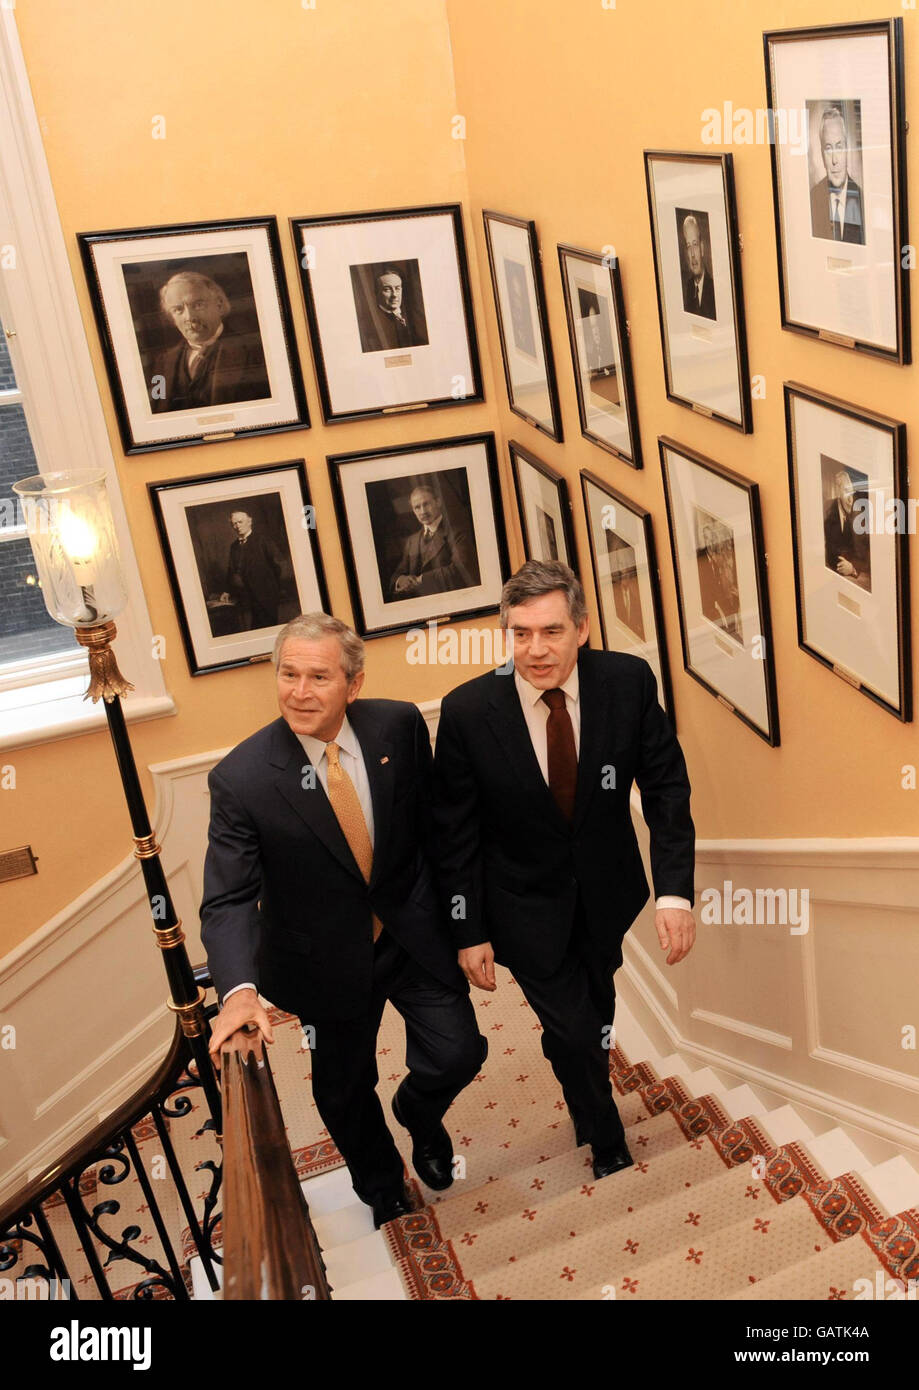 Il presidente DEGLI STATI UNITI George Bush sale la scalinata con il primo ministro Gordon Brown all'interno del 10 Downing Street. I due leader discuteranno probabilmente dell'Iraq, dell'Afghanistan e dell'impennata dei prezzi mondiali del petrolio. Foto Stock